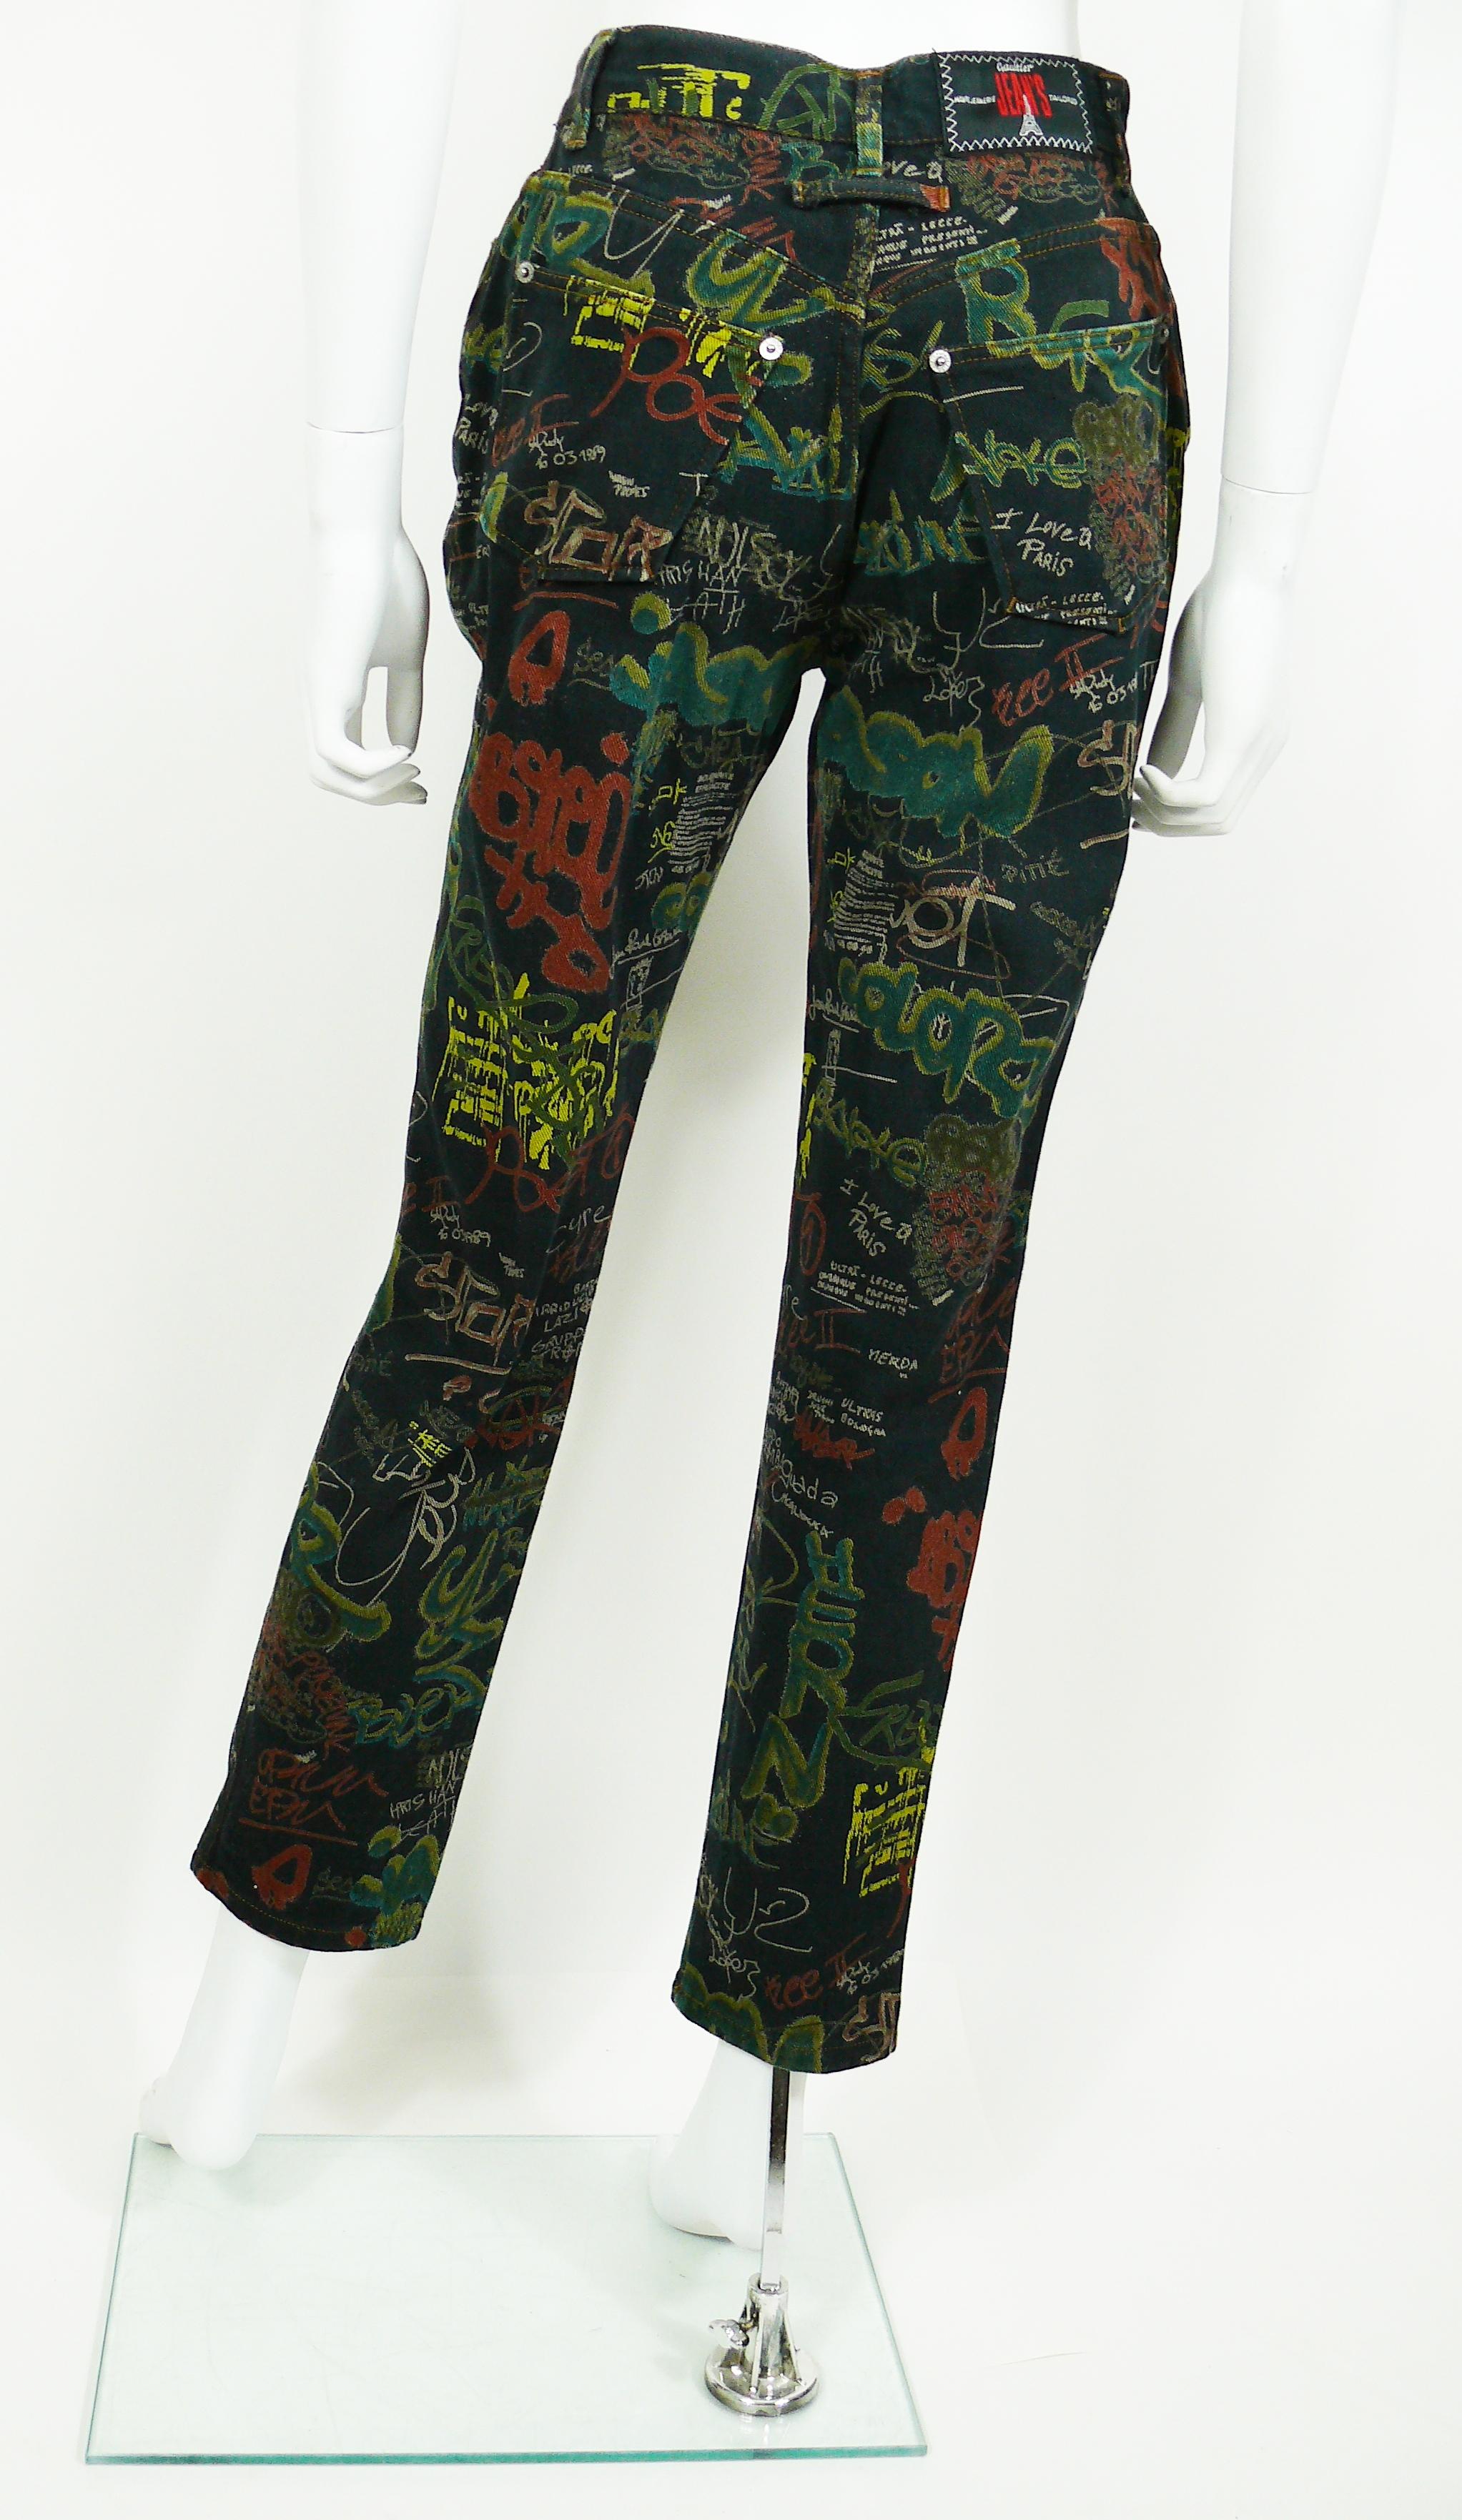 Black Jean Paul Gaultier Vintage Graffiti Print Pants Trousers US Size 30